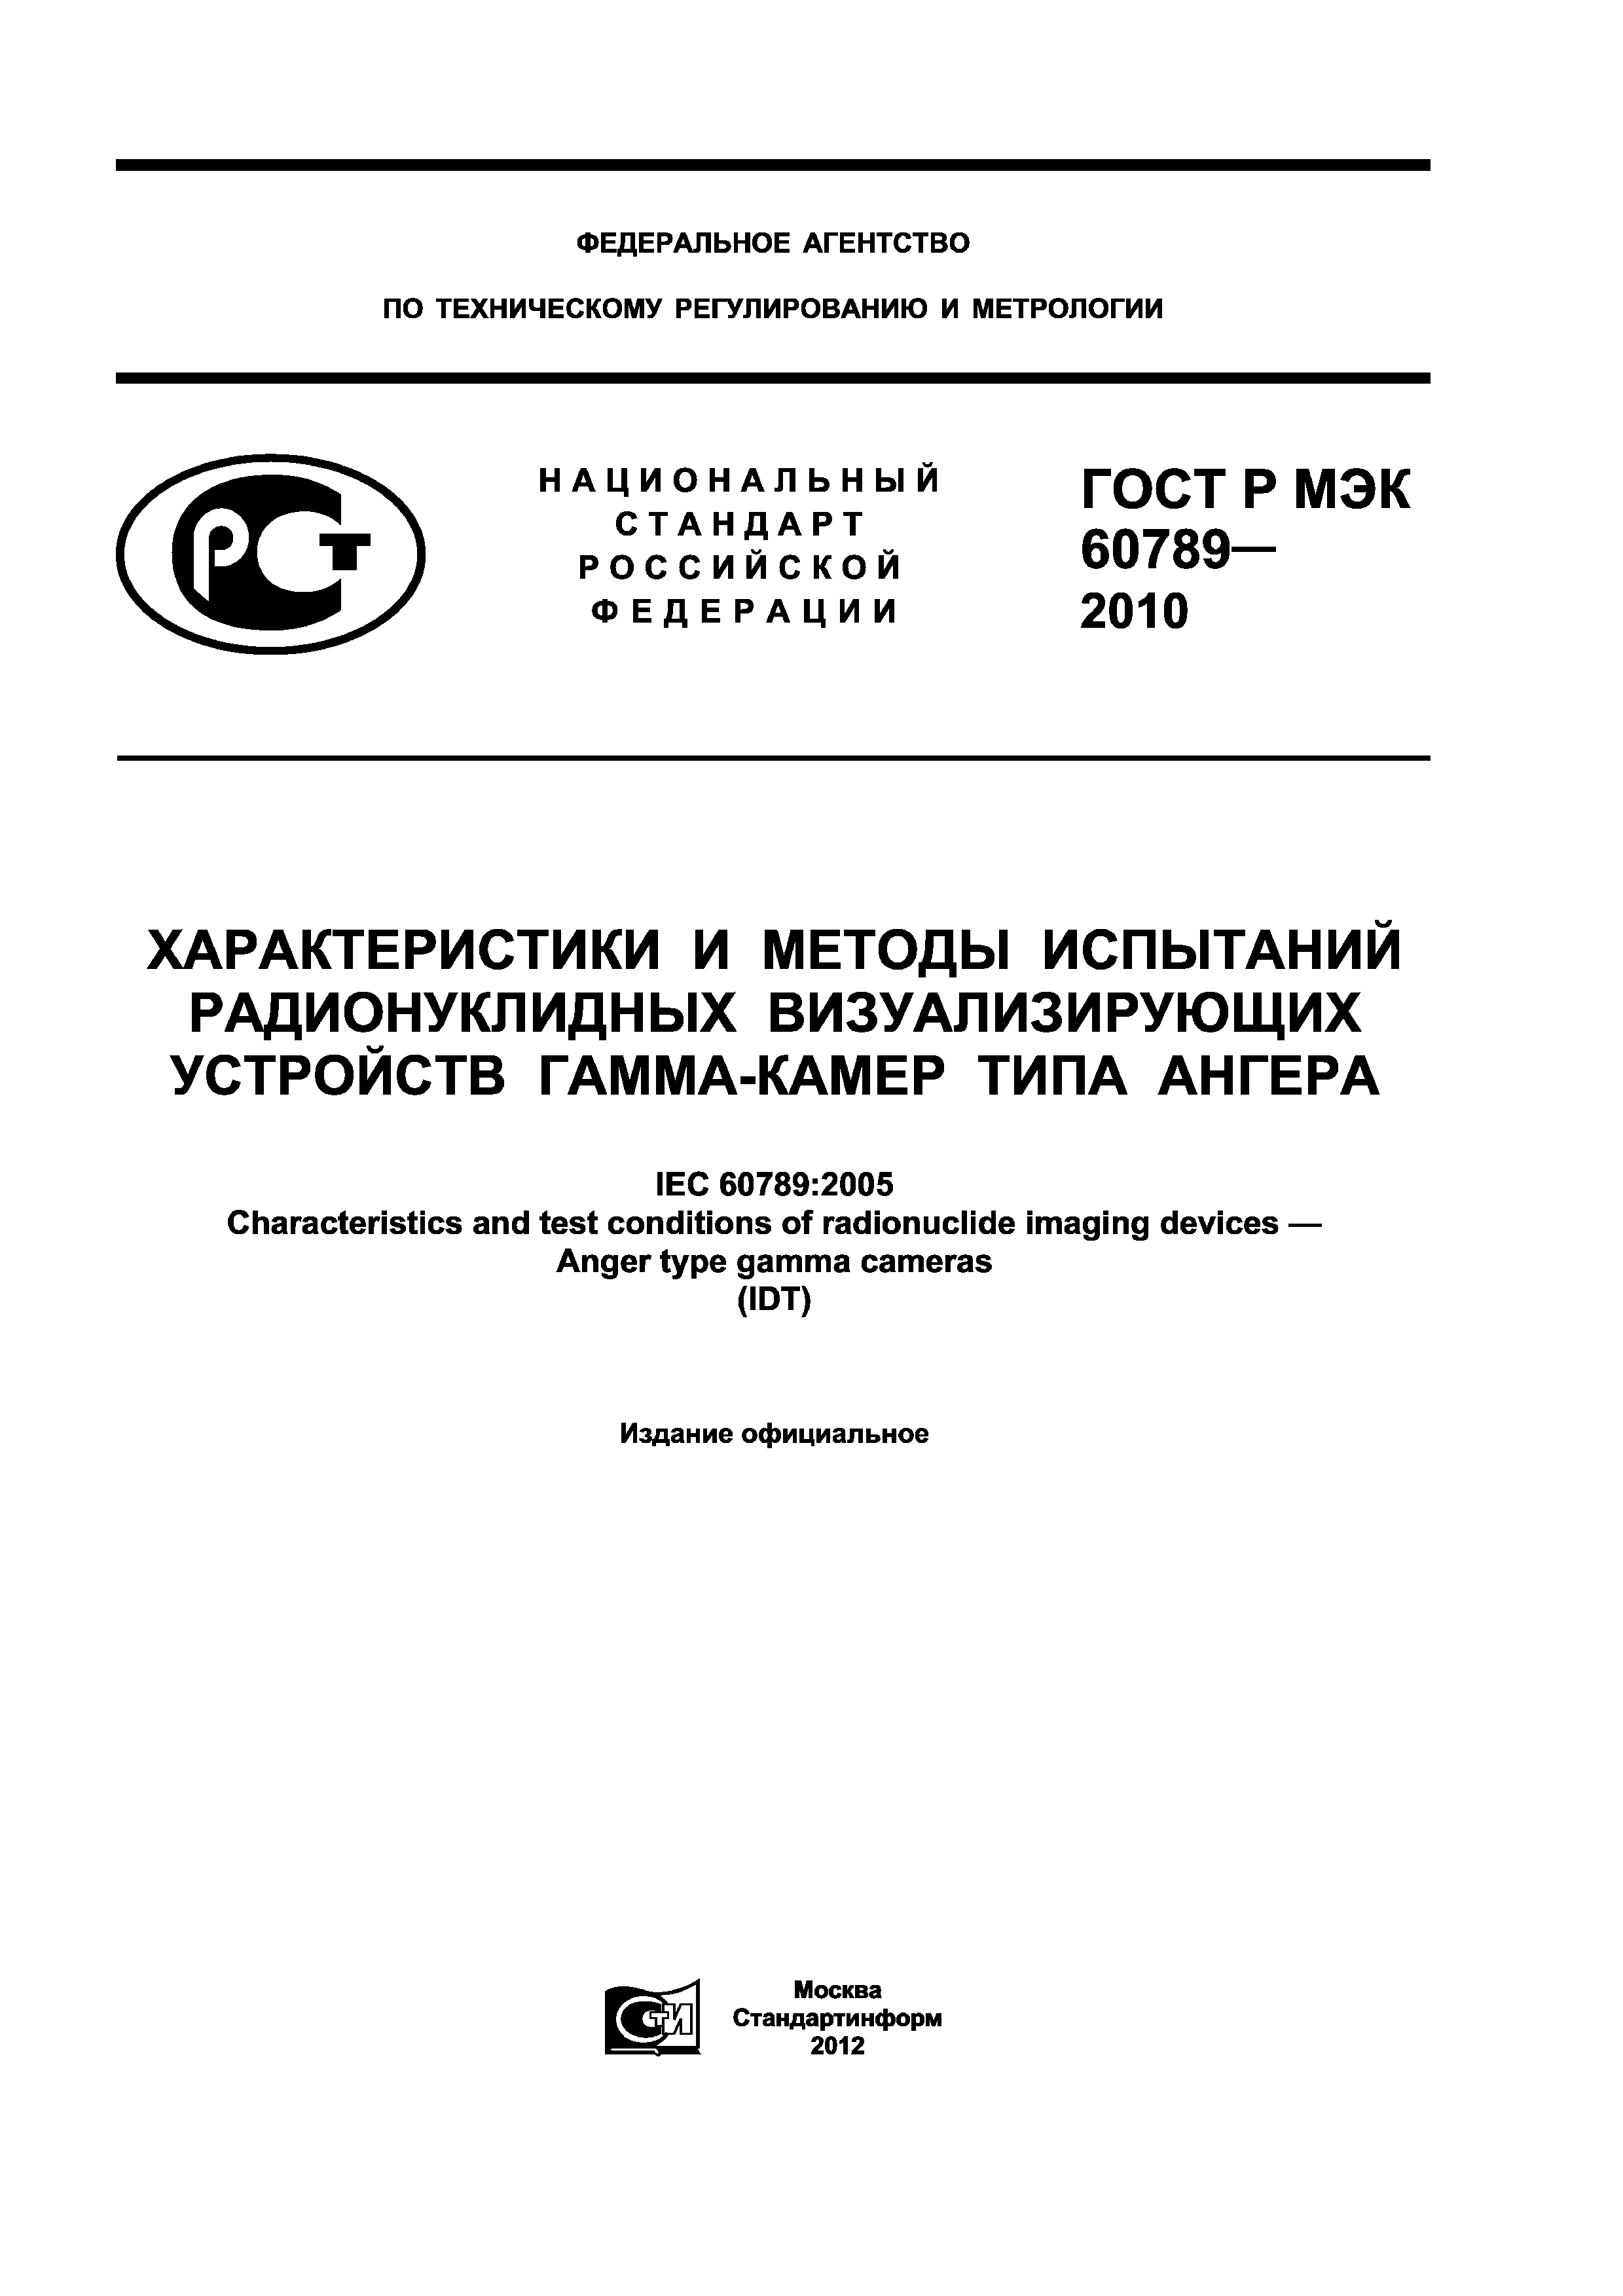 ГОСТ Р МЭК 60789-2010